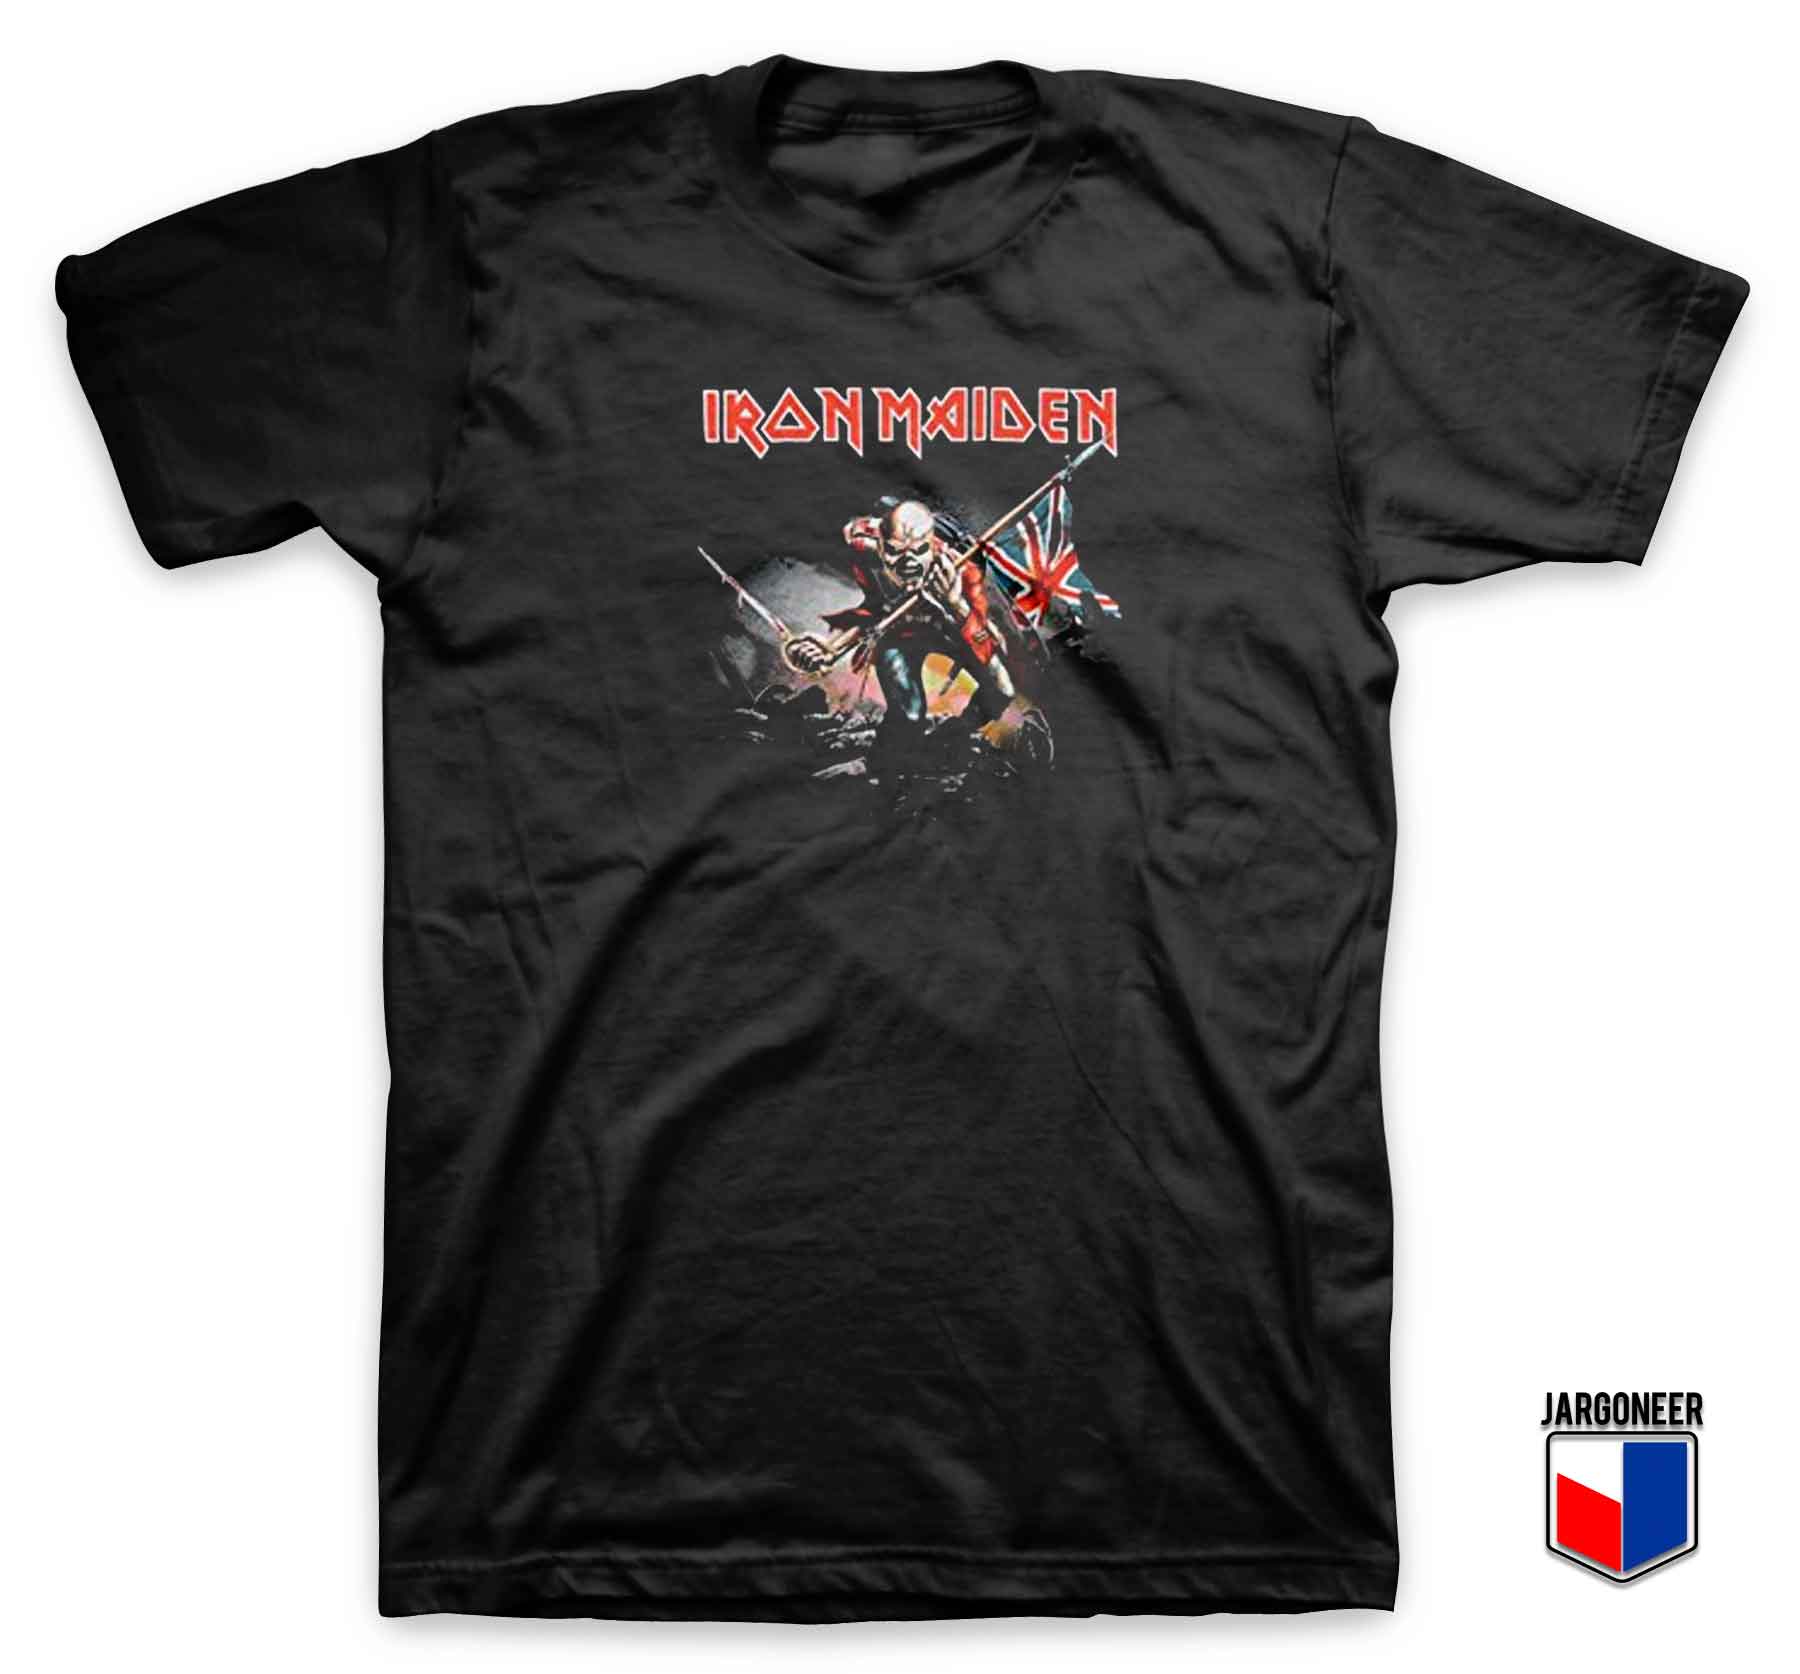 Iron Maiden Trooper - Shop Unique Graphic Cool Shirt Designs